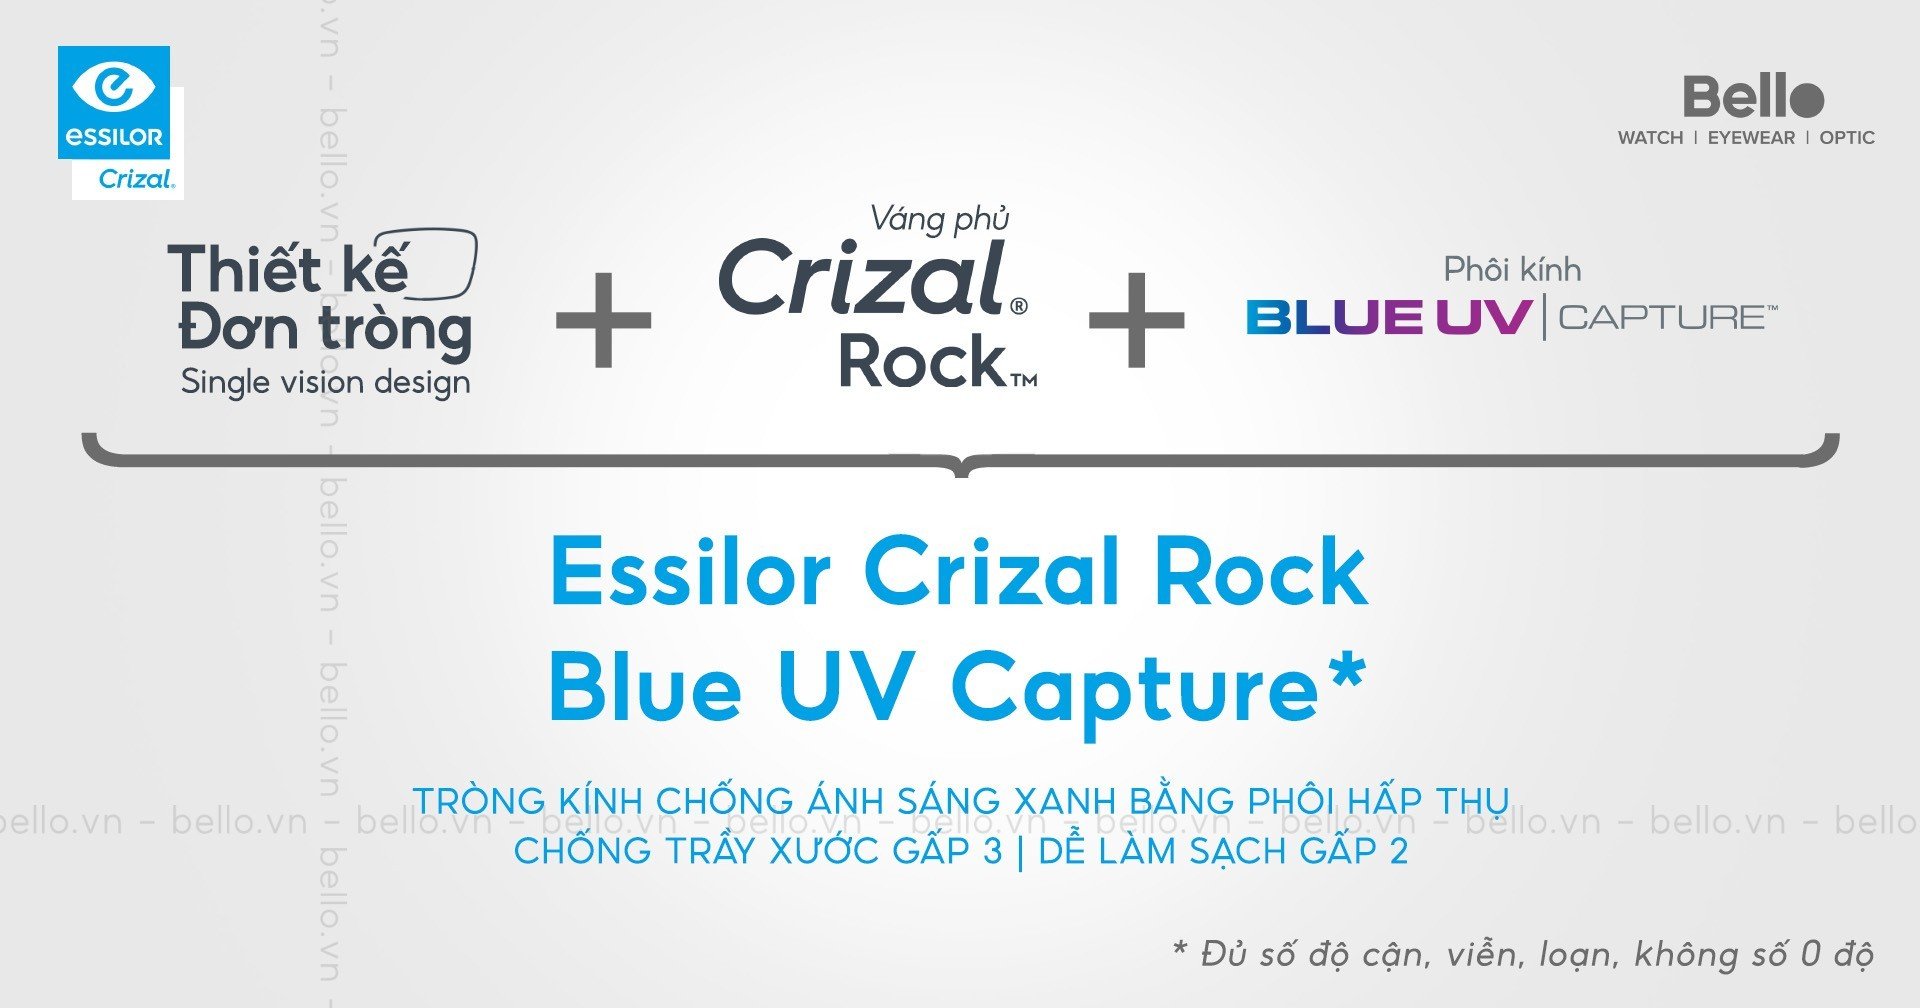 Essilor Crizal Rock BlueUV Capture